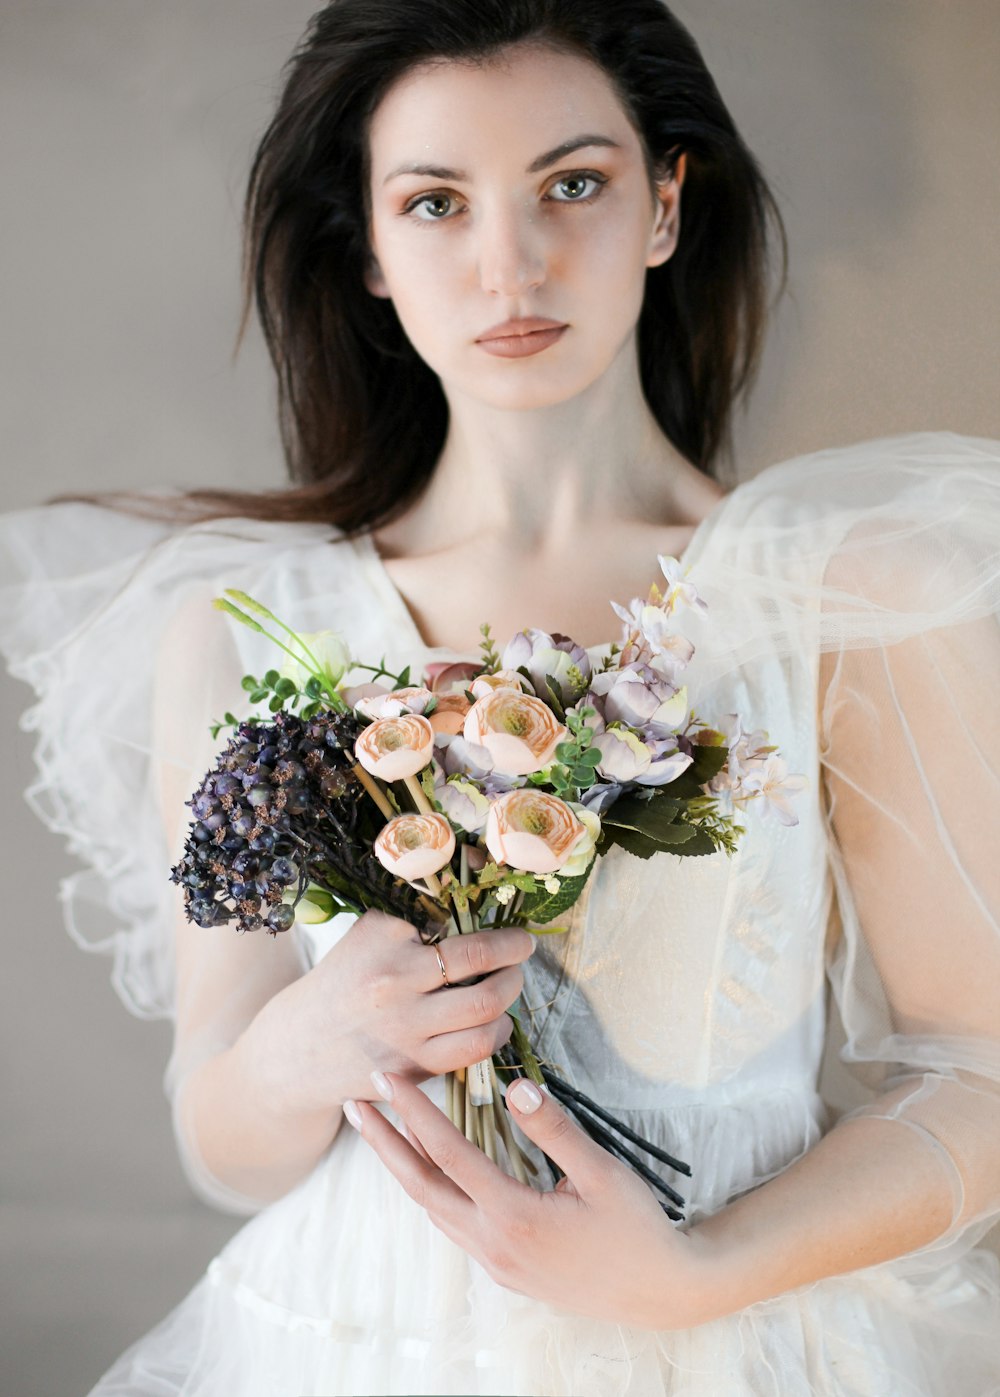 꽃다발을 들고 있는 흰색 웨딩 드레스를 입은 여자